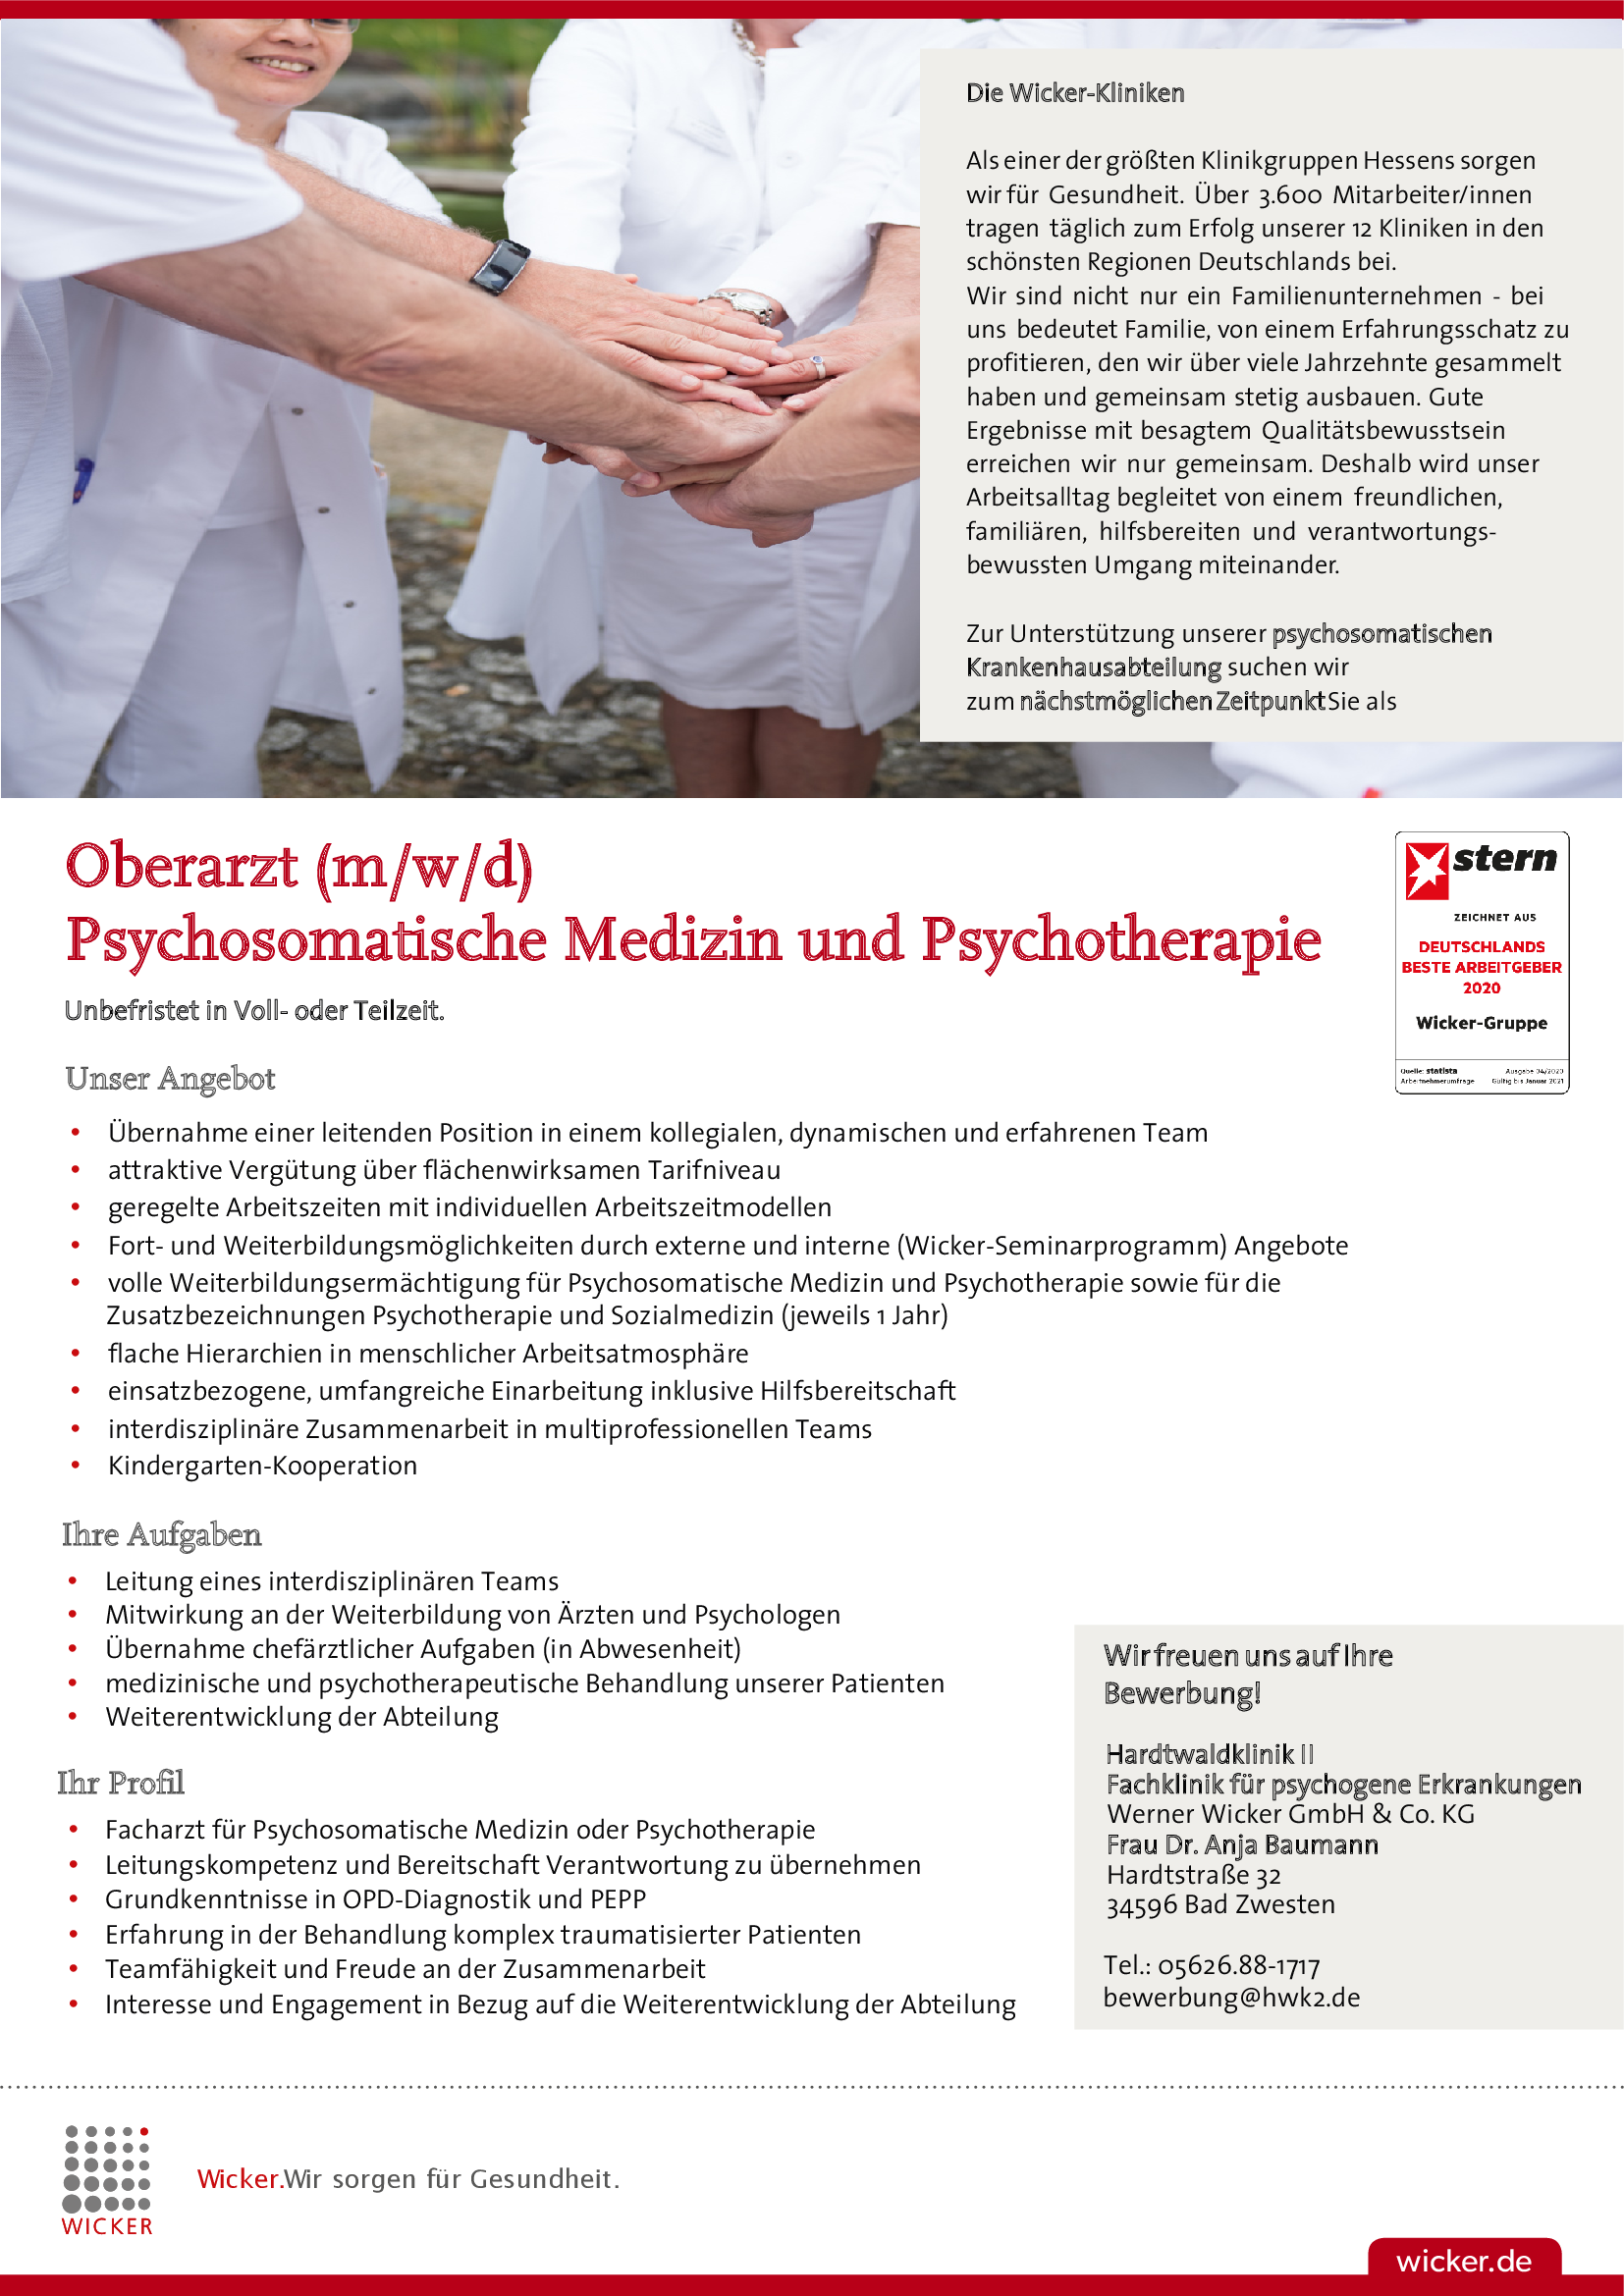 Hardtwaldklinik II: Oberarzt (m/w/d) Psychosomatische Medizin und Psychotherapie